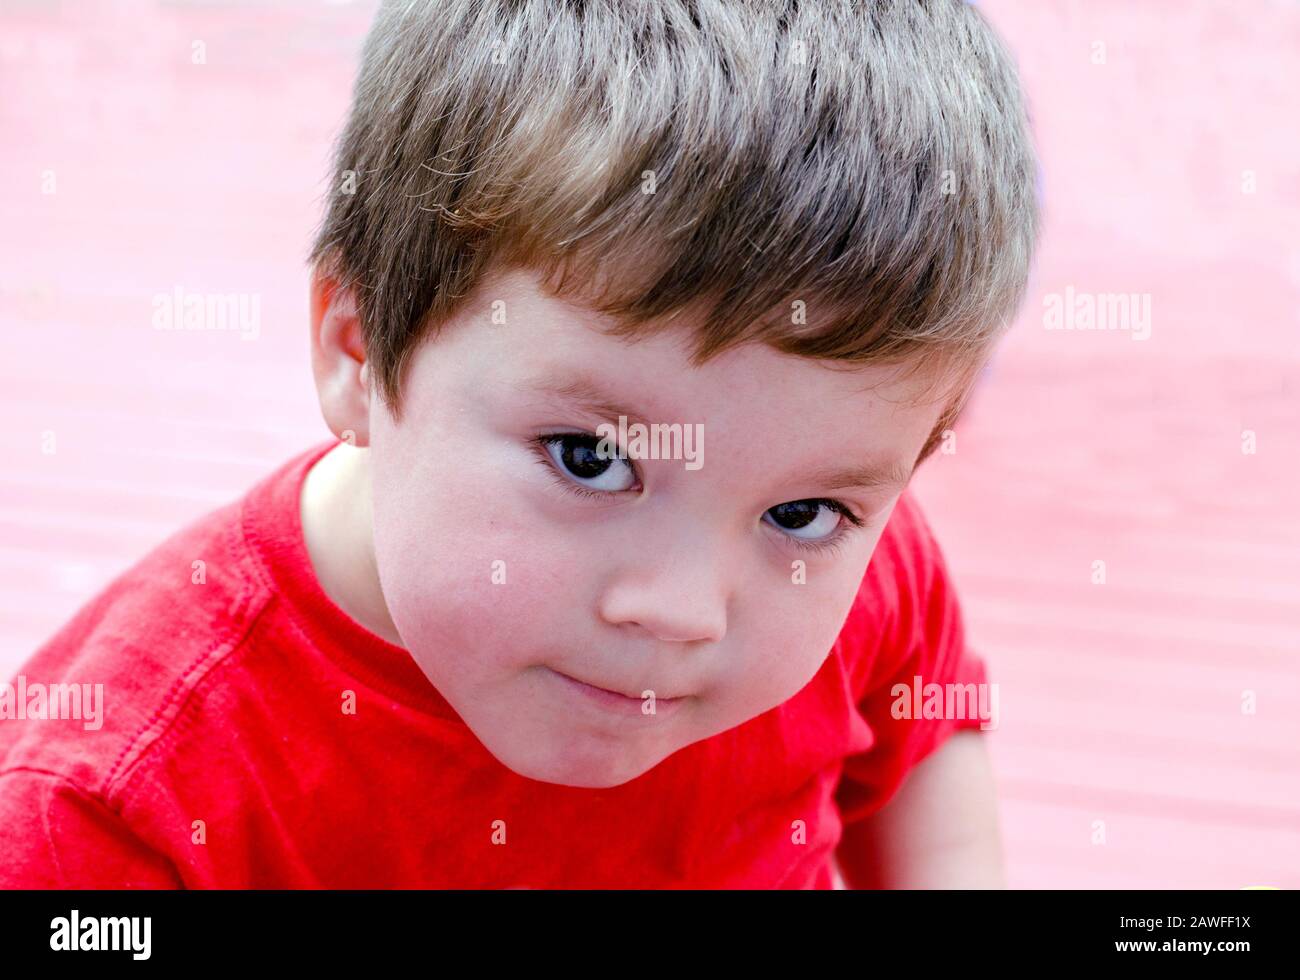 Portrait d'un jeune garçon à la recherche d'une expression curieuse Banque D'Images